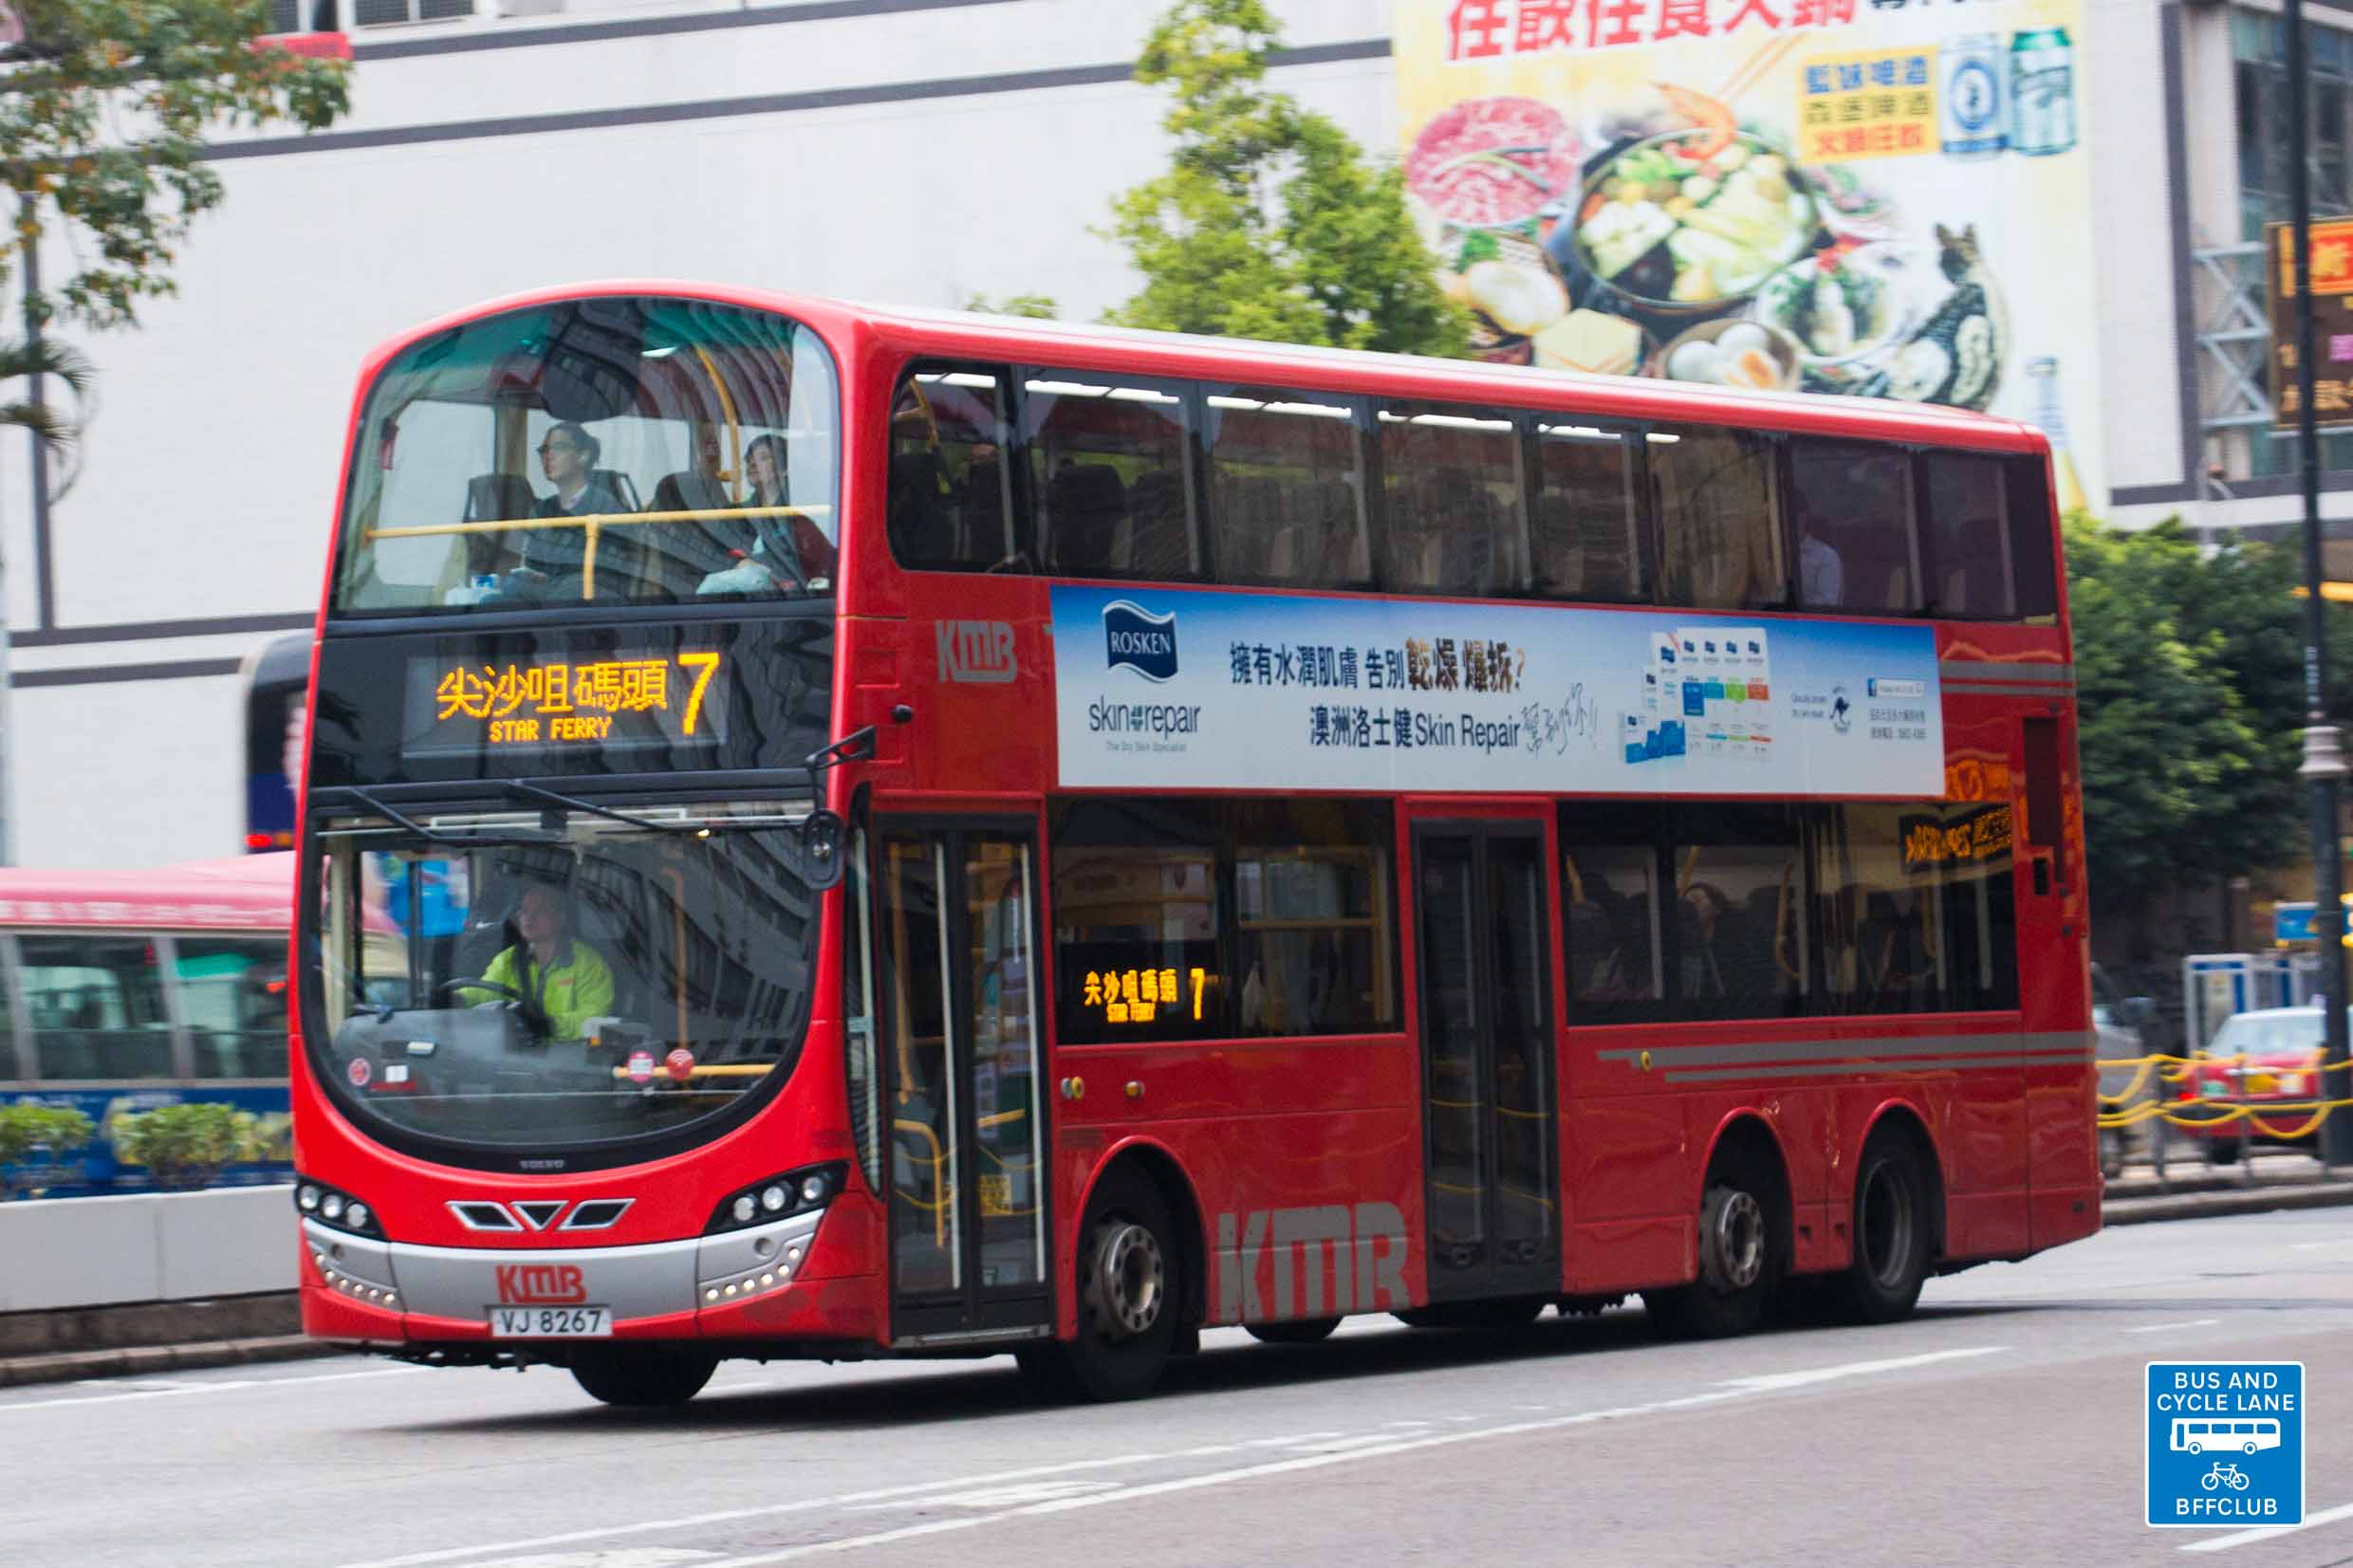 九巴7號線 香港巴士大典 Fandom